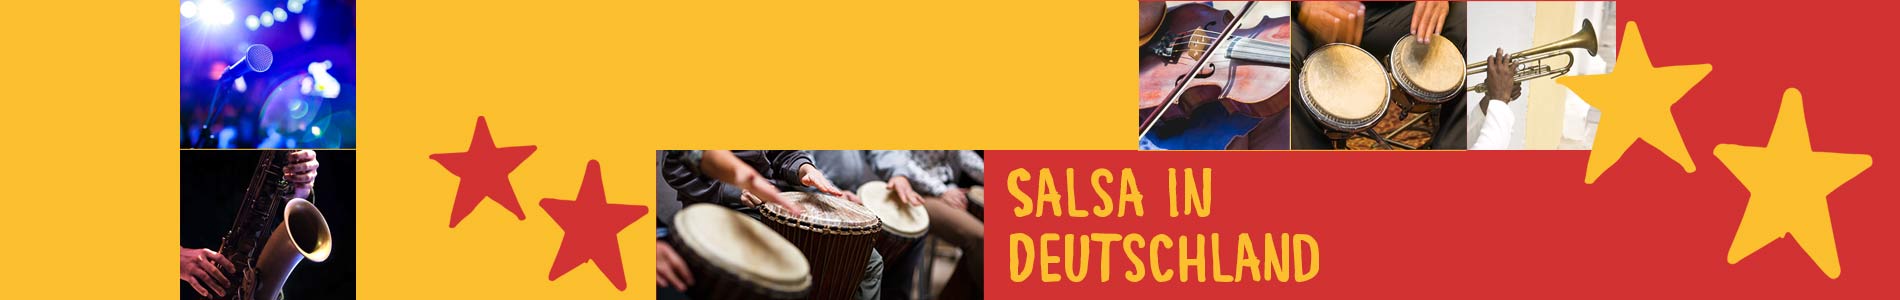 Salsa in Dahlem – Salsa lernen und tanzen, Tanzkurse, Partys, Veranstaltungen